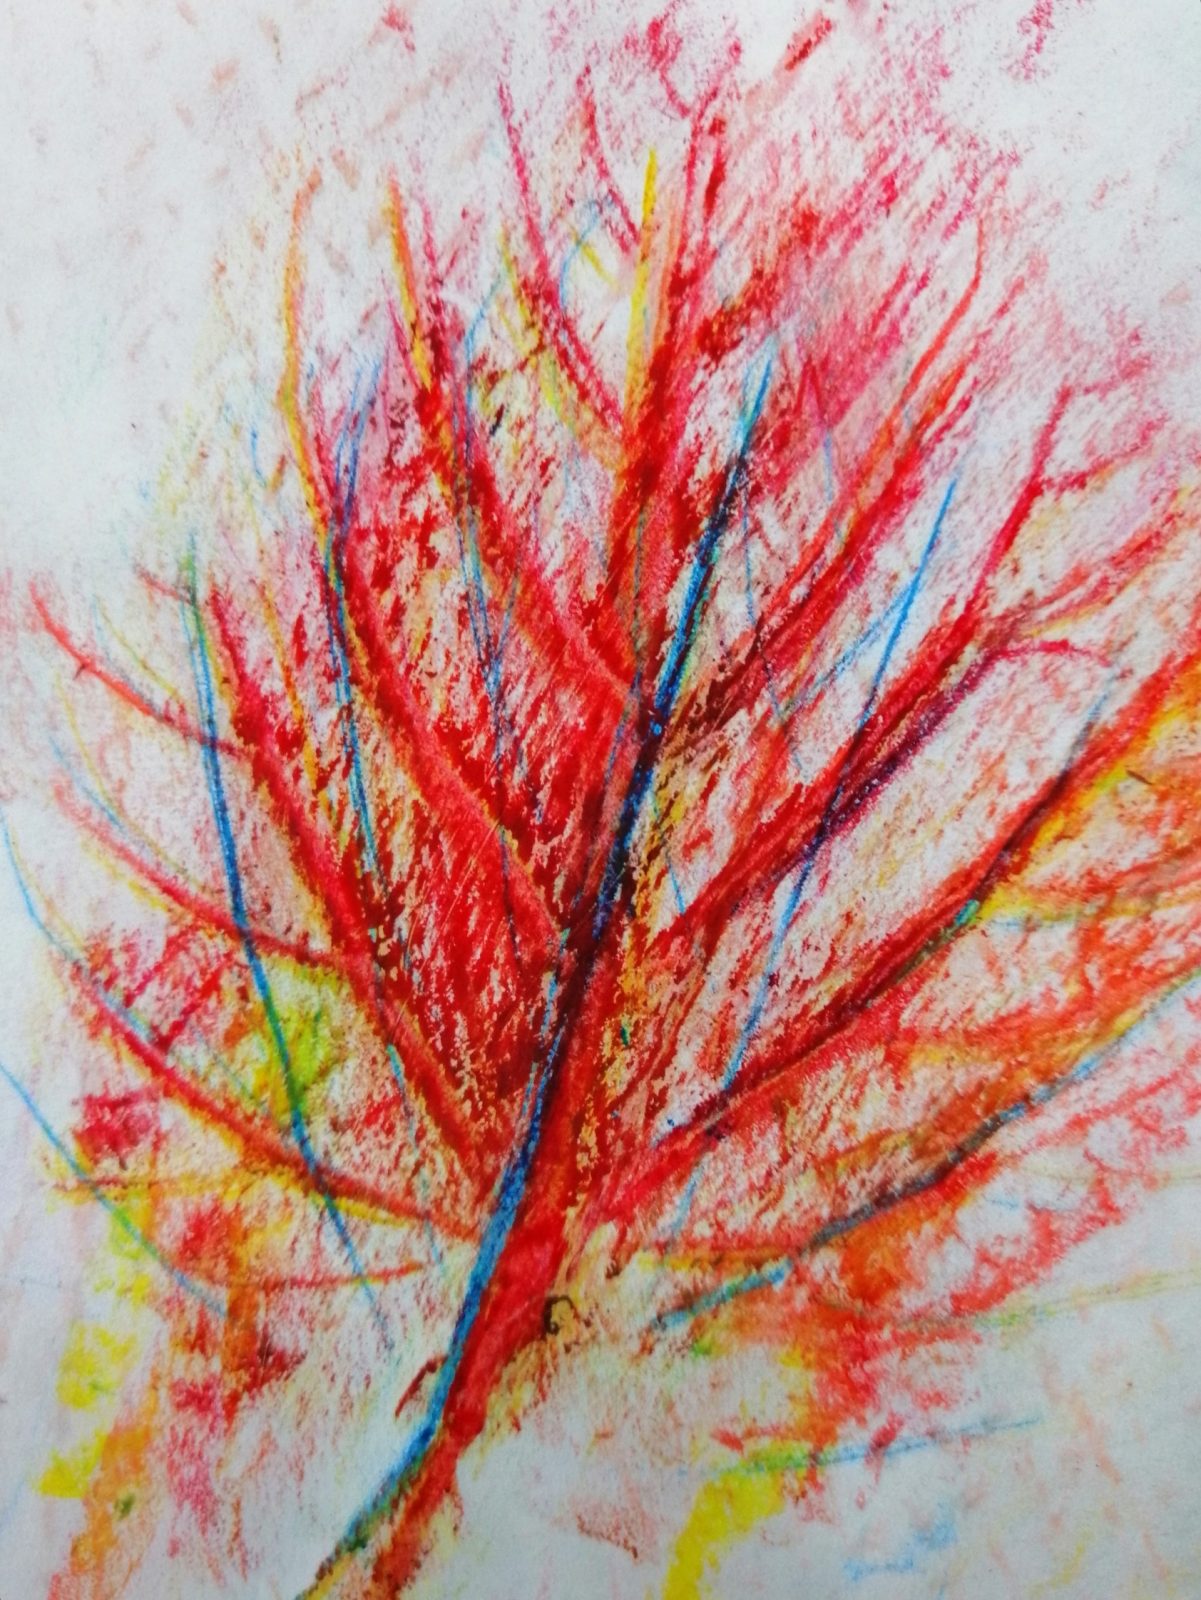 Kompozycja plastyczna struktury fragmentu jesiennego liścia w układzie diagonalnym. Praca wykonana w technice frotażu z użyciem barw ciepłych i zimnych.